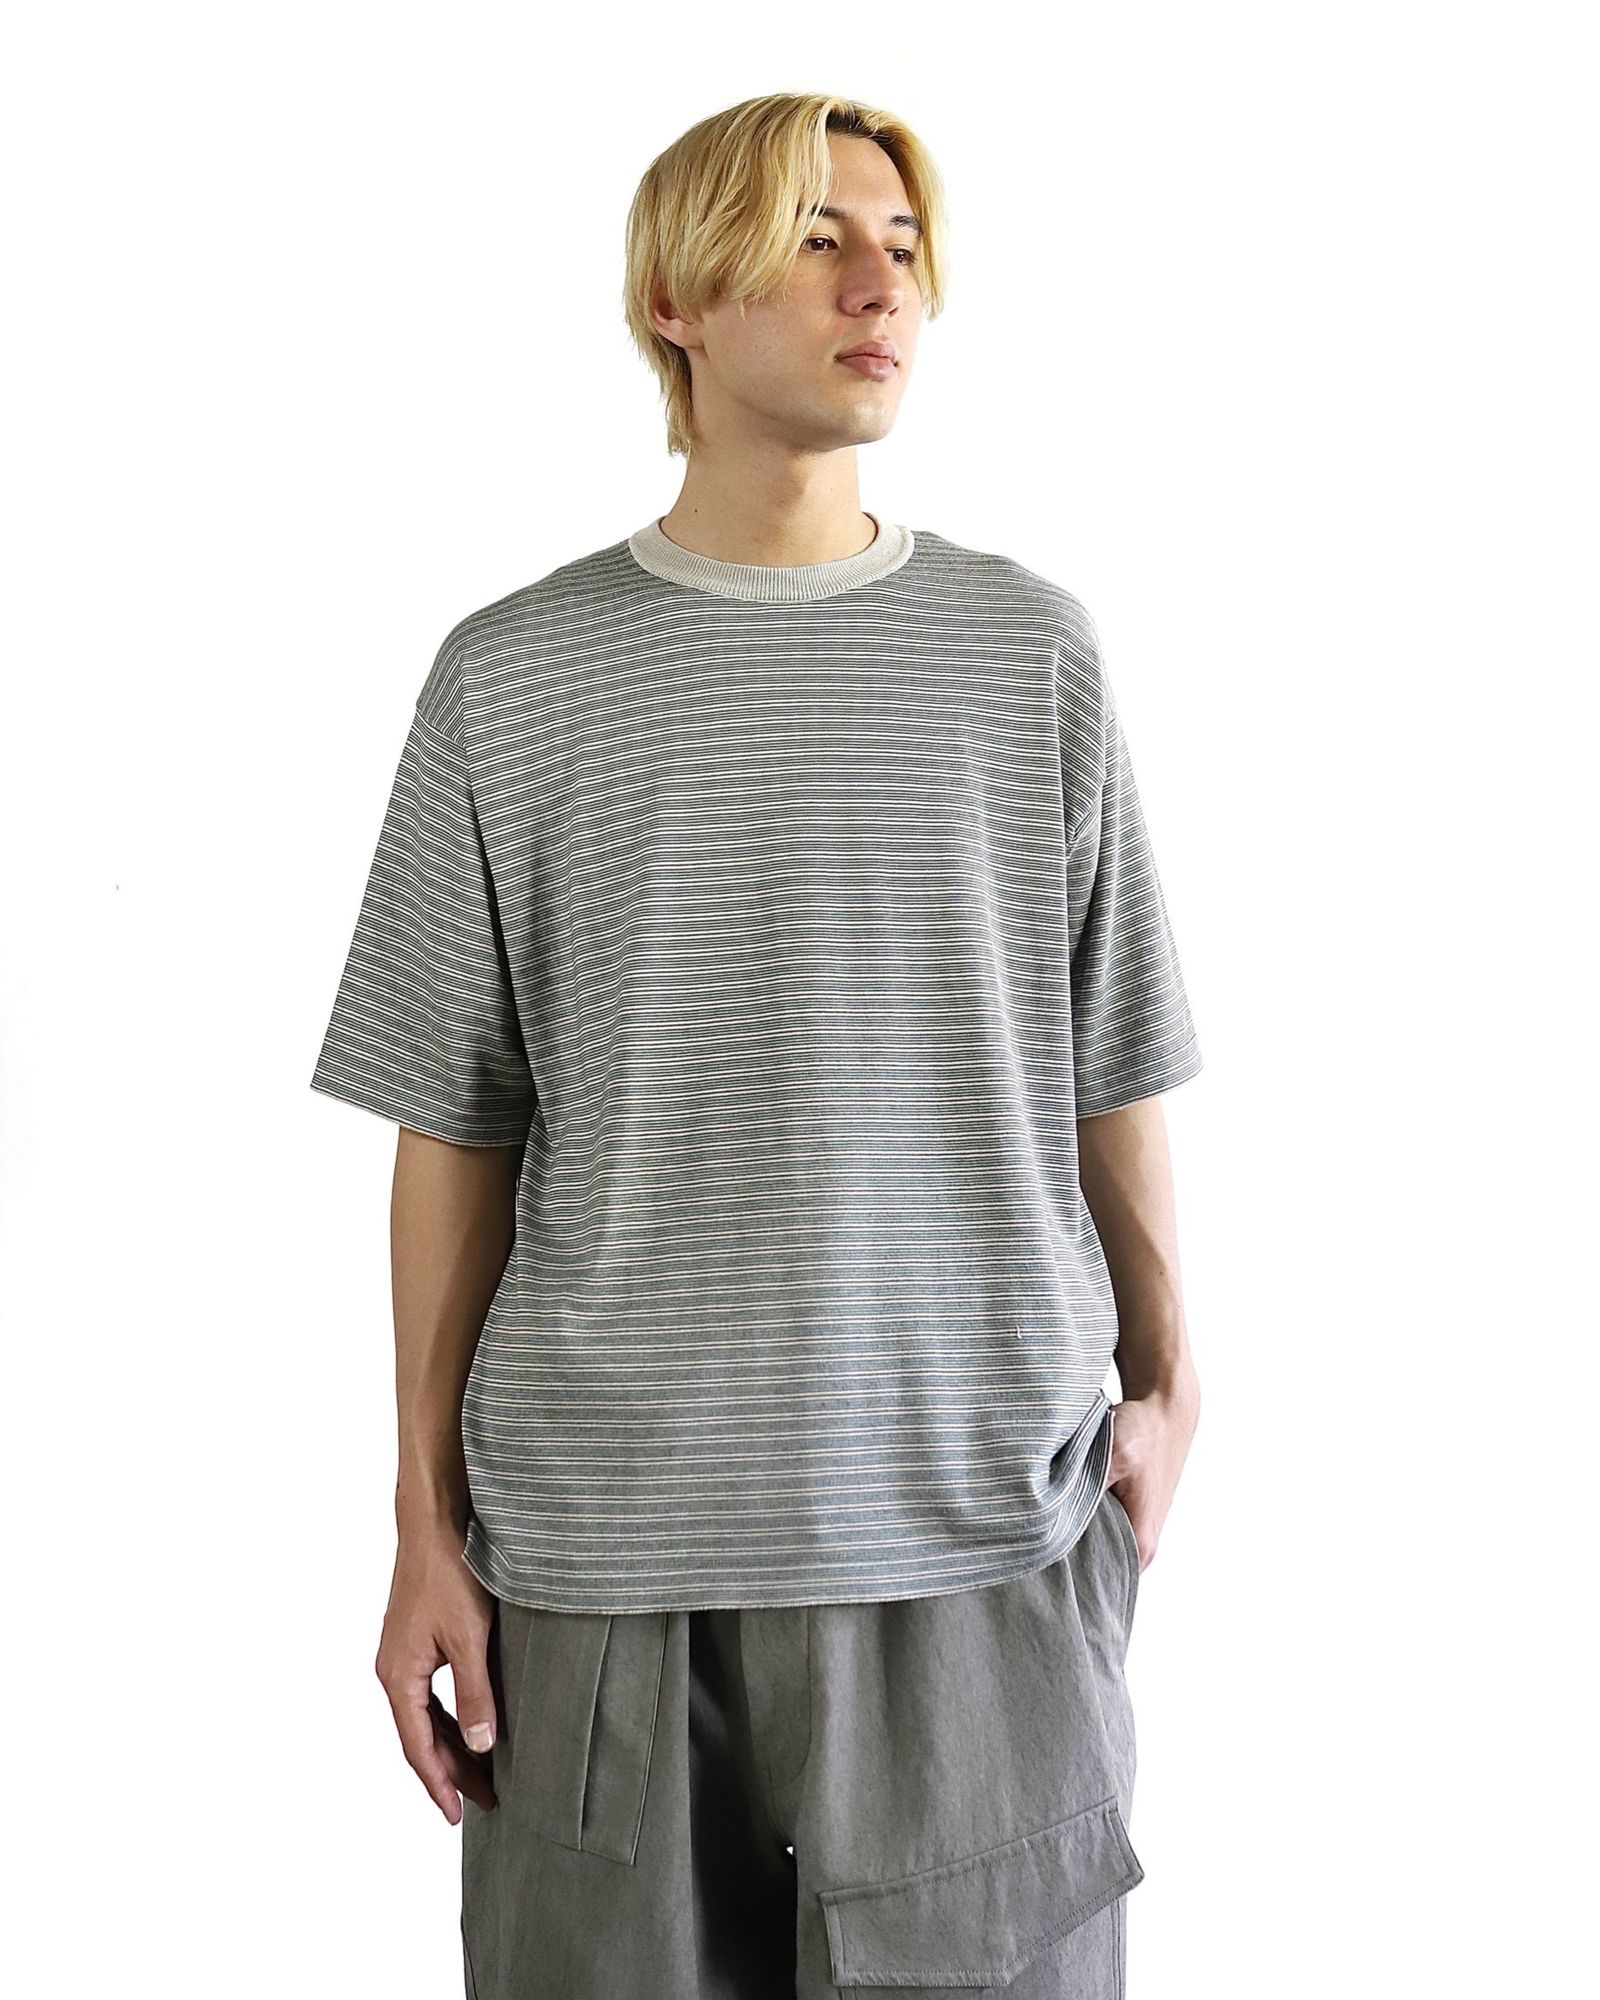 NAVY×ECアプレッセ　High Gauge S/S Striped T-Shirt